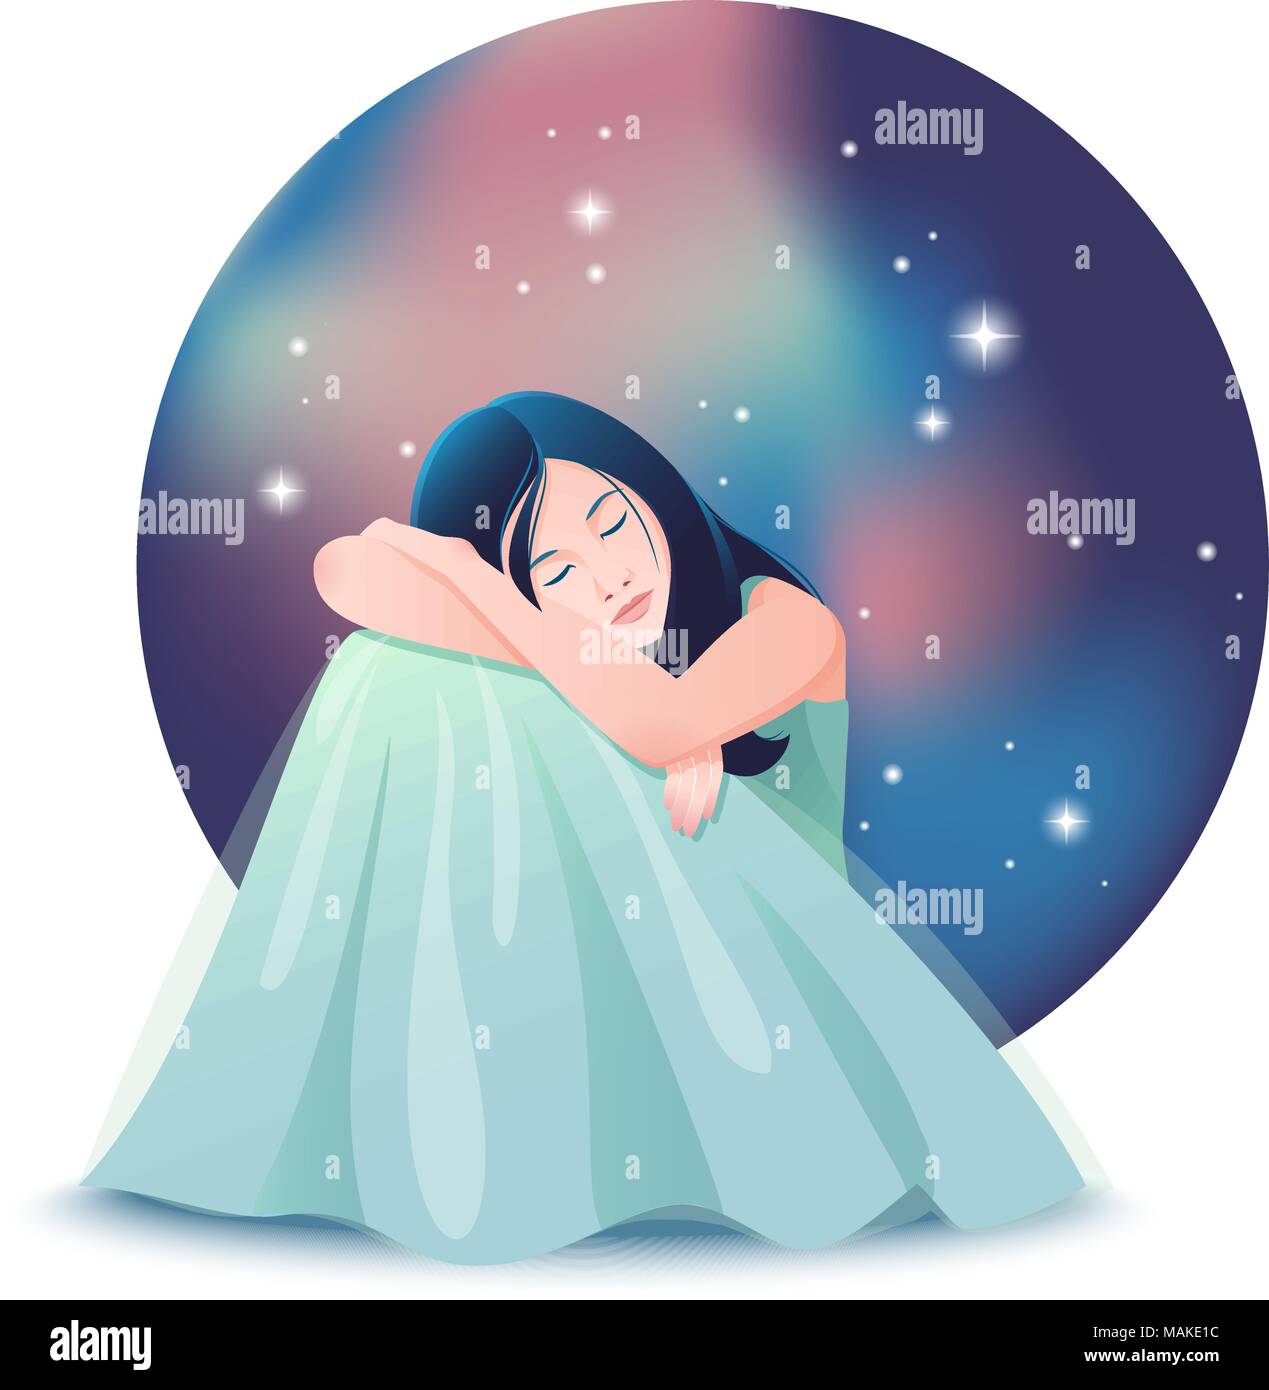 Illustrazione Vettoriale di carina ragazza sogna a occhi chiusi ubicazione di fronte sullo sfondo del cielo notturno con stelle. Illustrazione Vettoriale